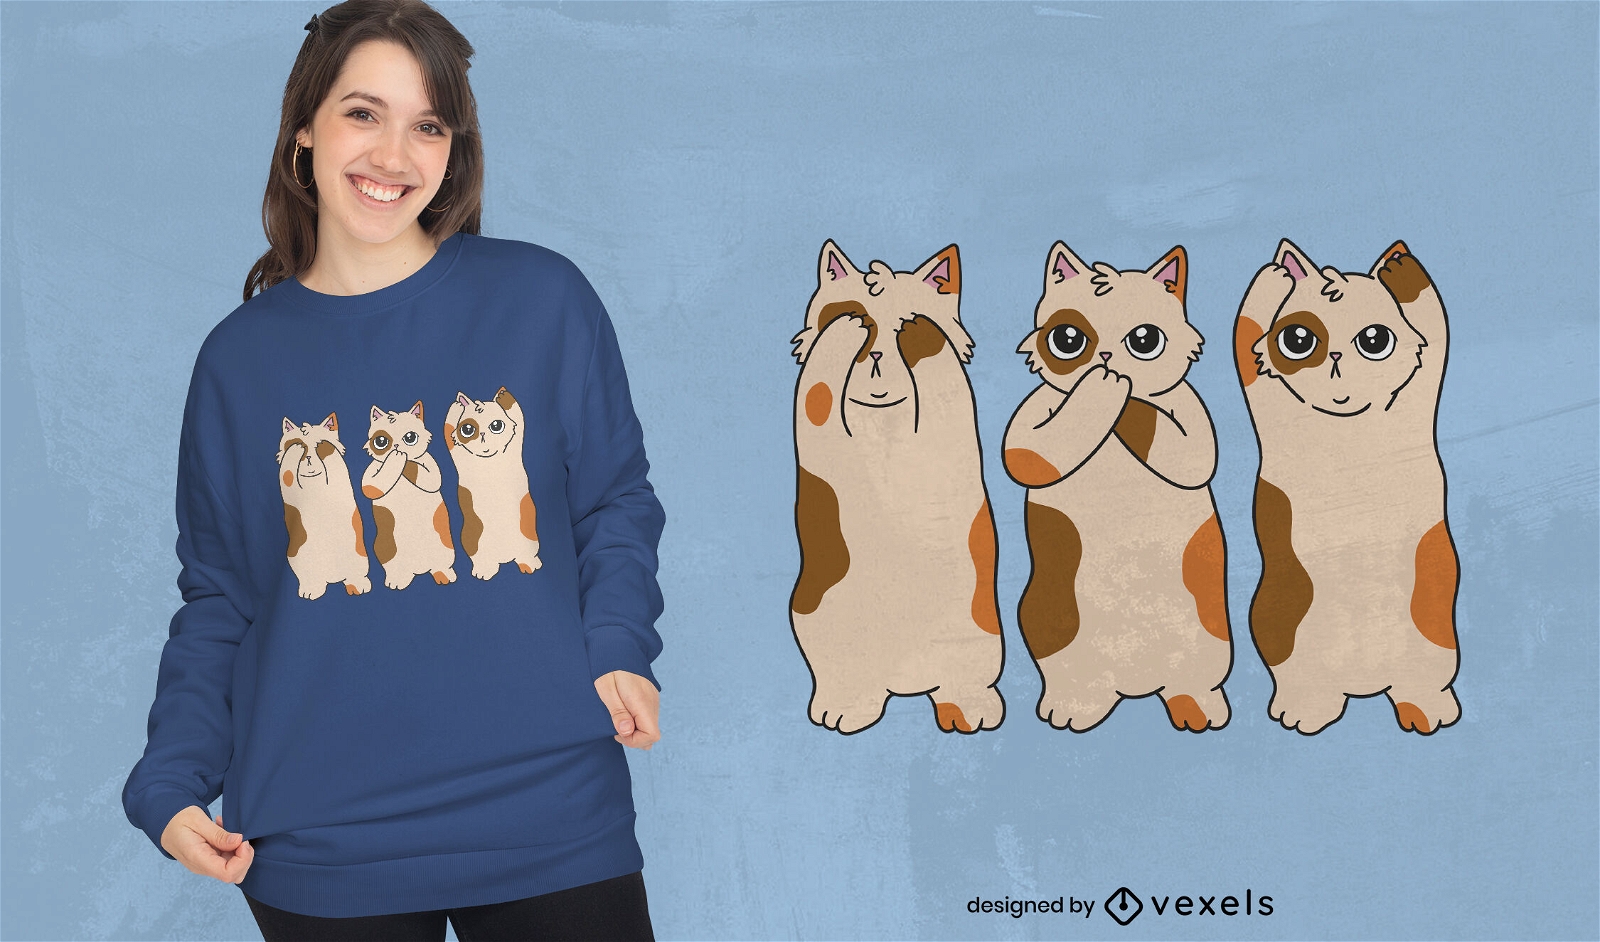 See no evil cat t-shirt design